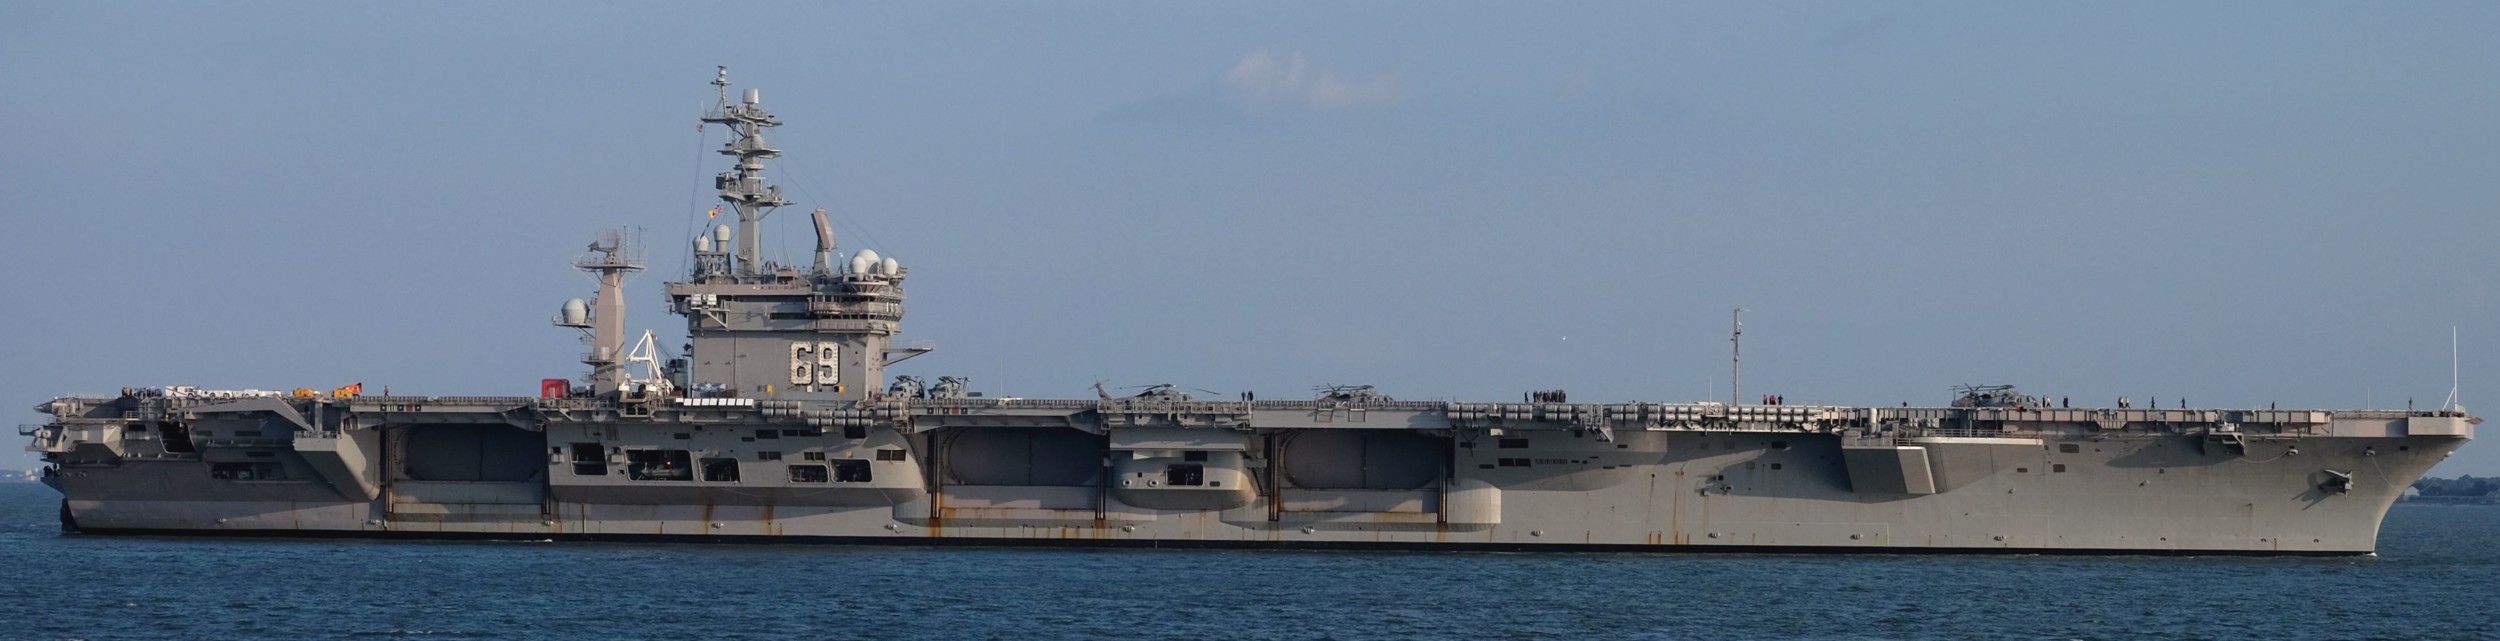 cvn-69 uss dwight d. eisenhower aircraft carrier us navy 449